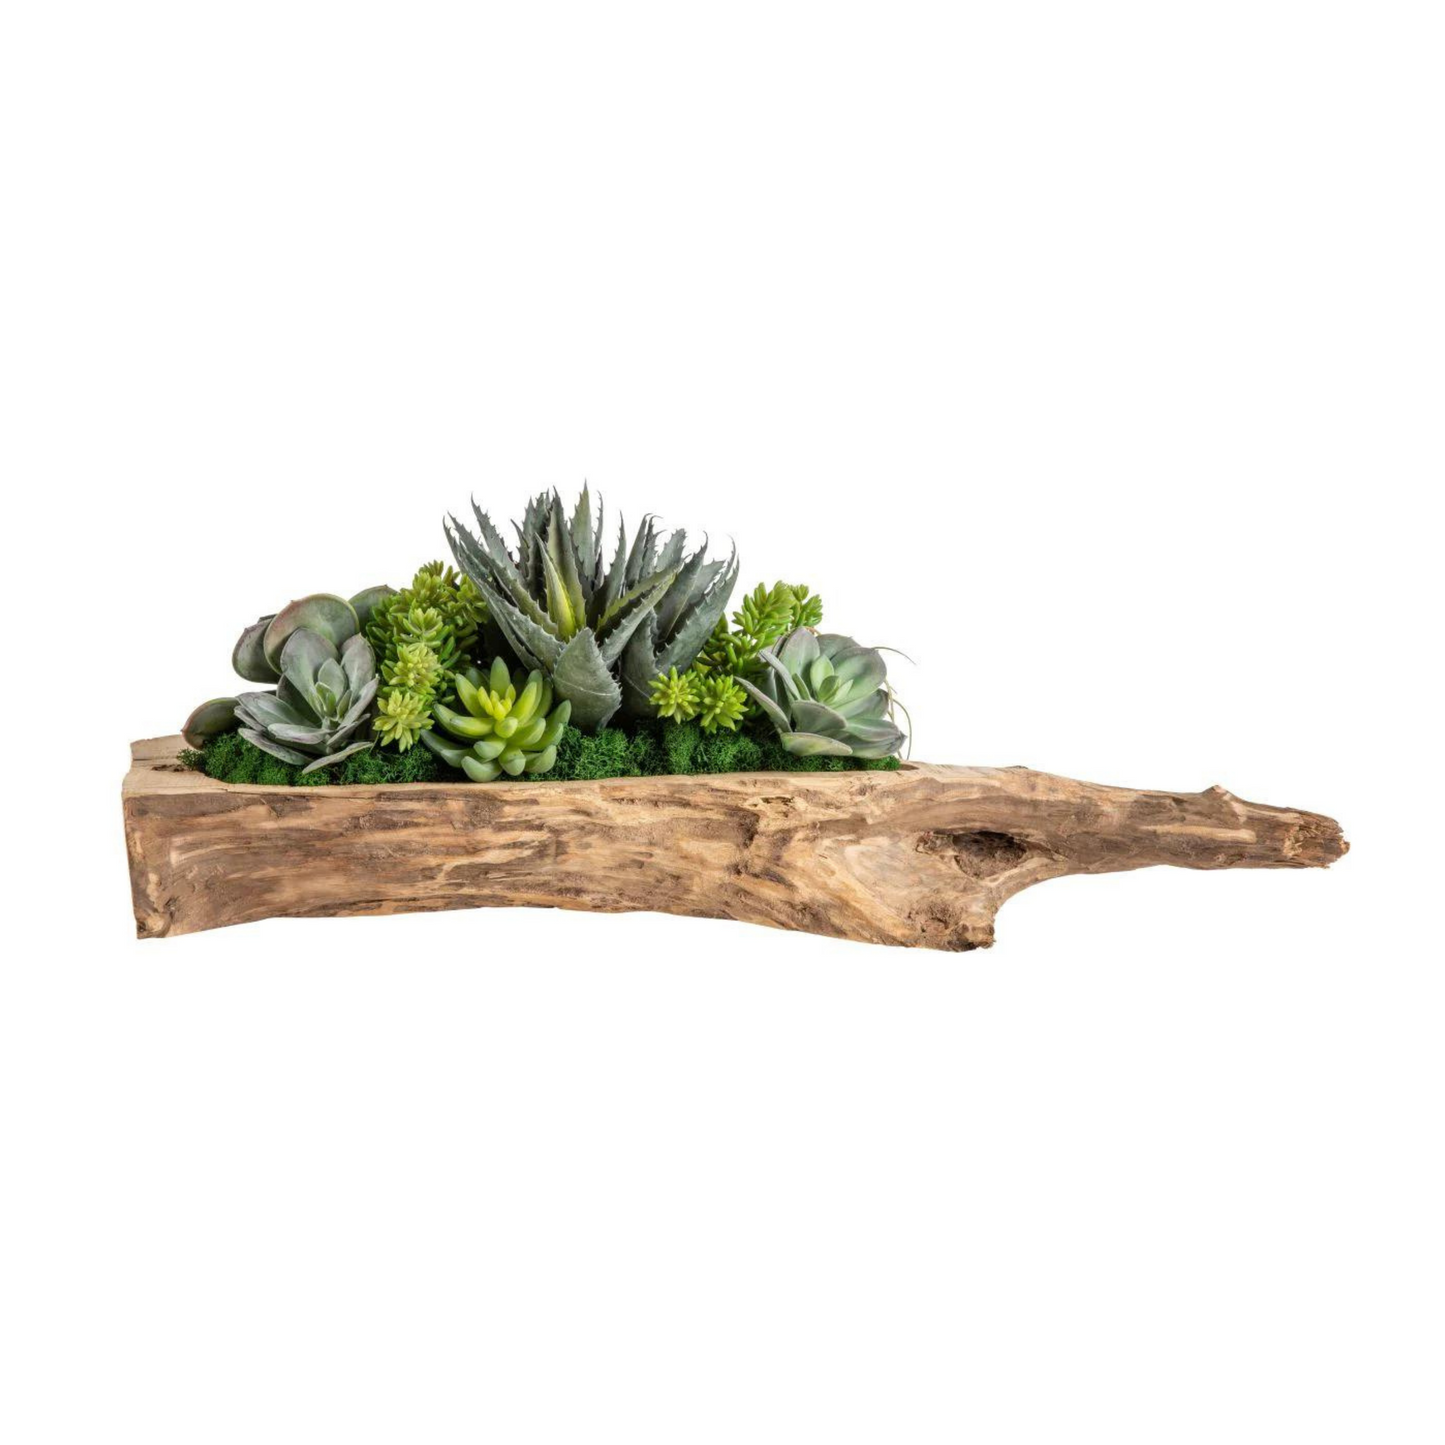 Driftwood Succulent Arrangement